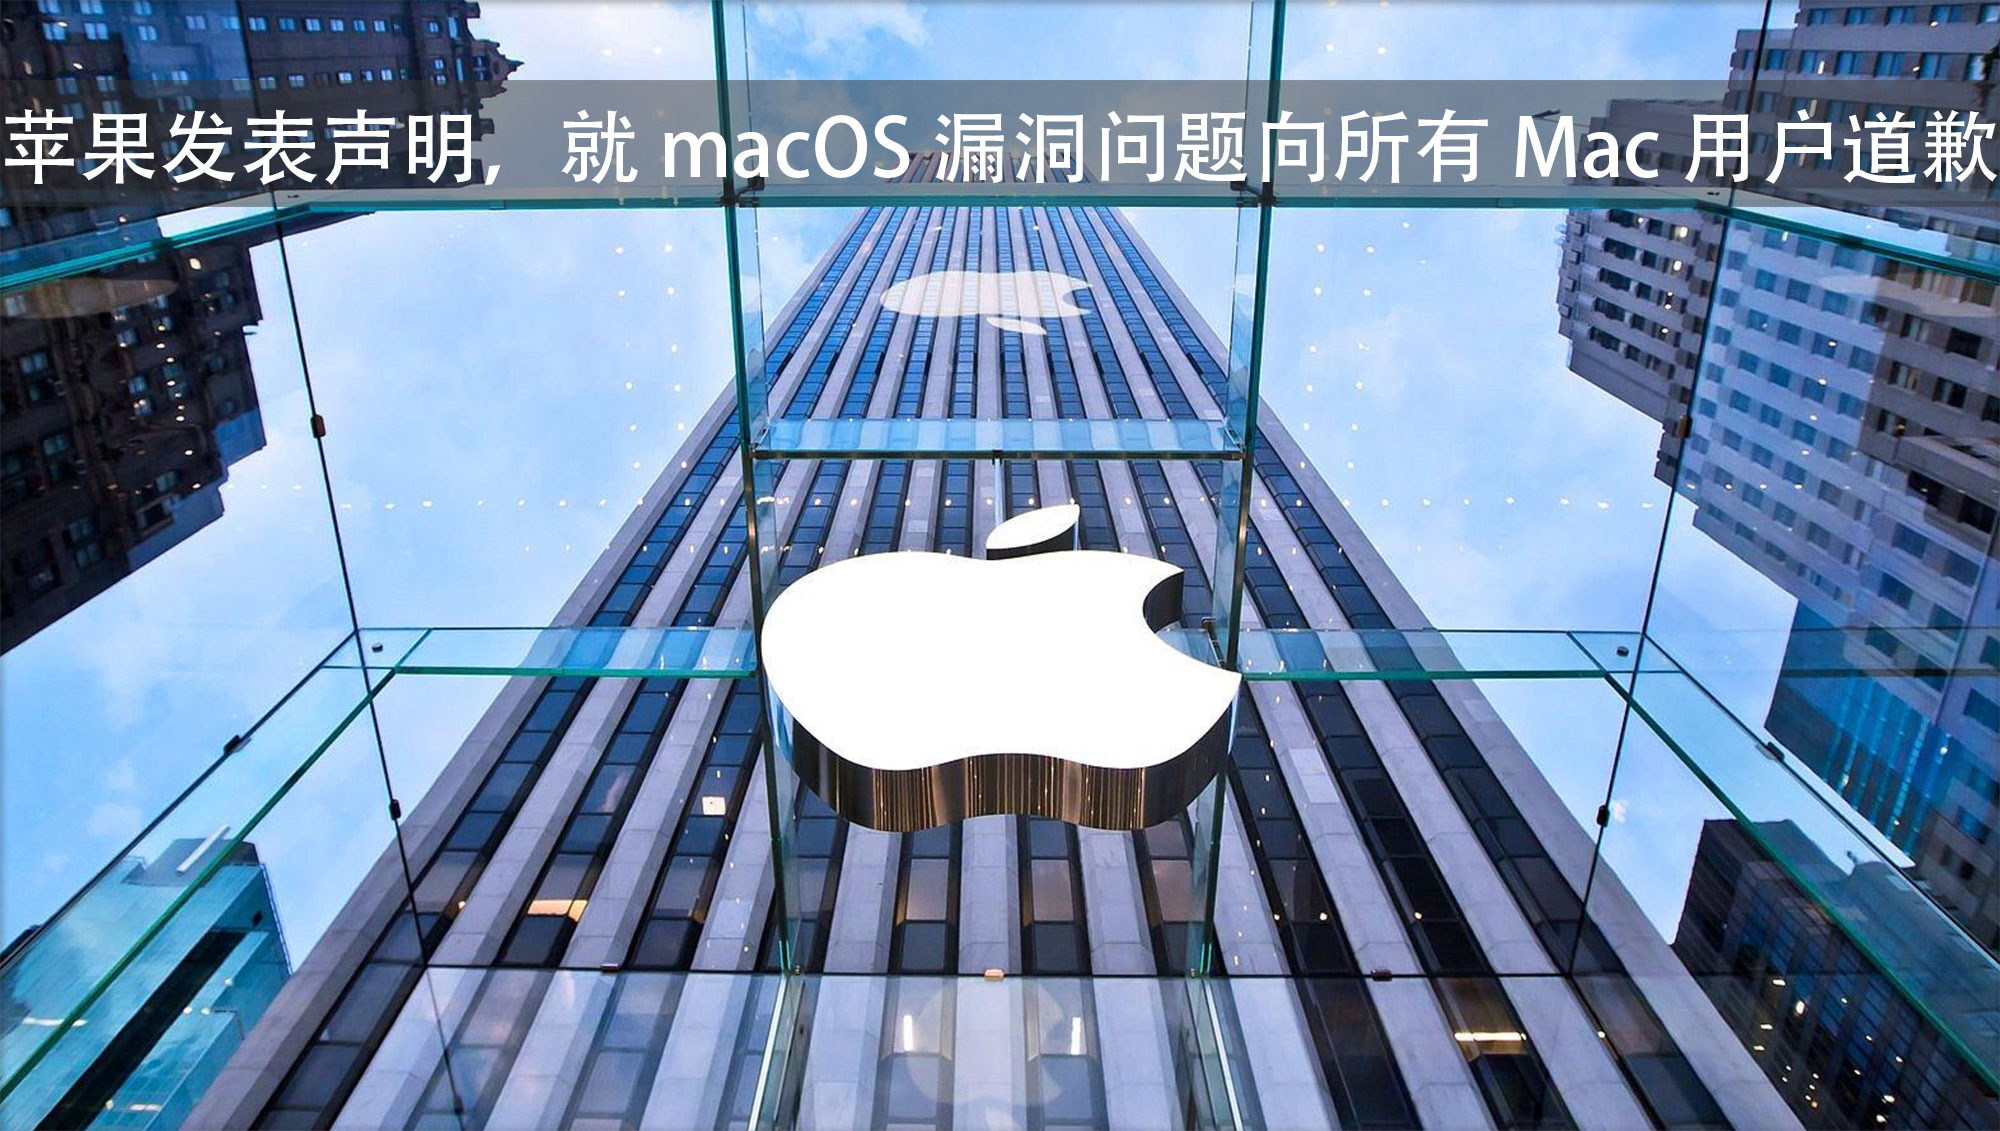 苹果发布更新修复 macOS 漏洞，并发表道歉声明